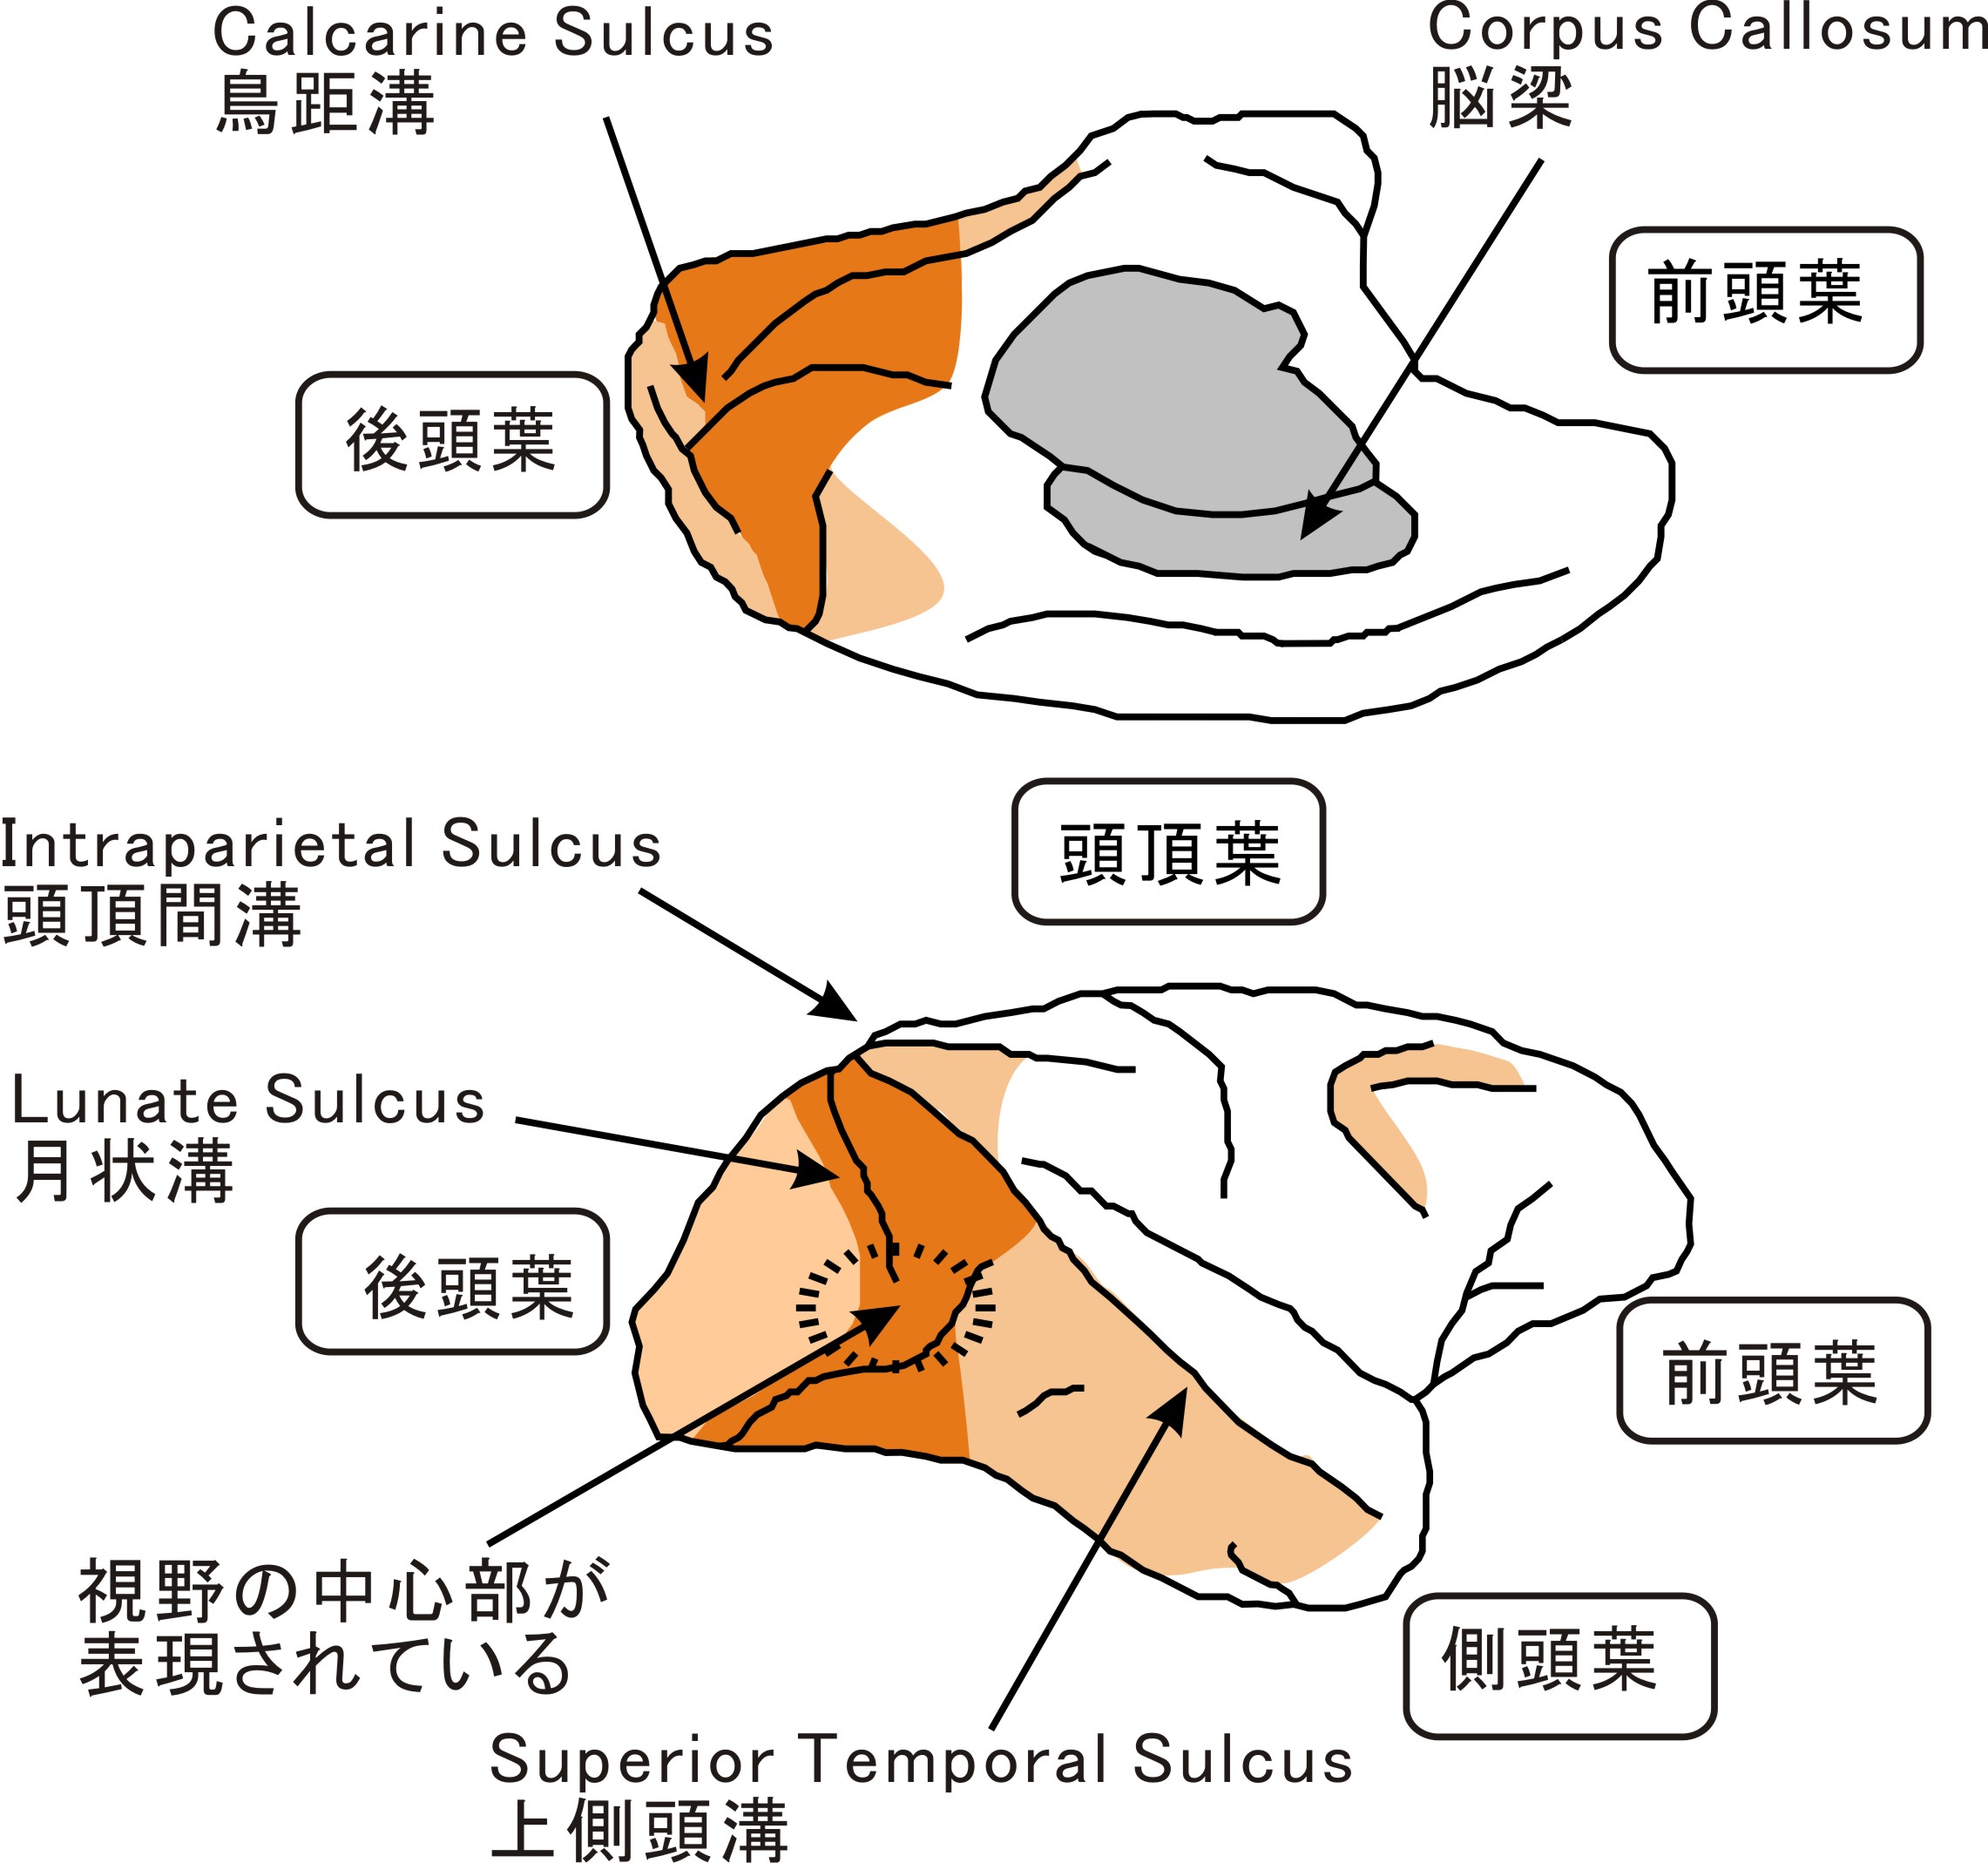 図１　マカクザルの大脳皮質（右半球）外側面（下図）の上側が頭頂葉（背側）、下側が側頭葉（腹側）を示す。右側が前頭葉（前側）、左側が後頭葉（後側）。内側面（上図）は上下を逆に示す。